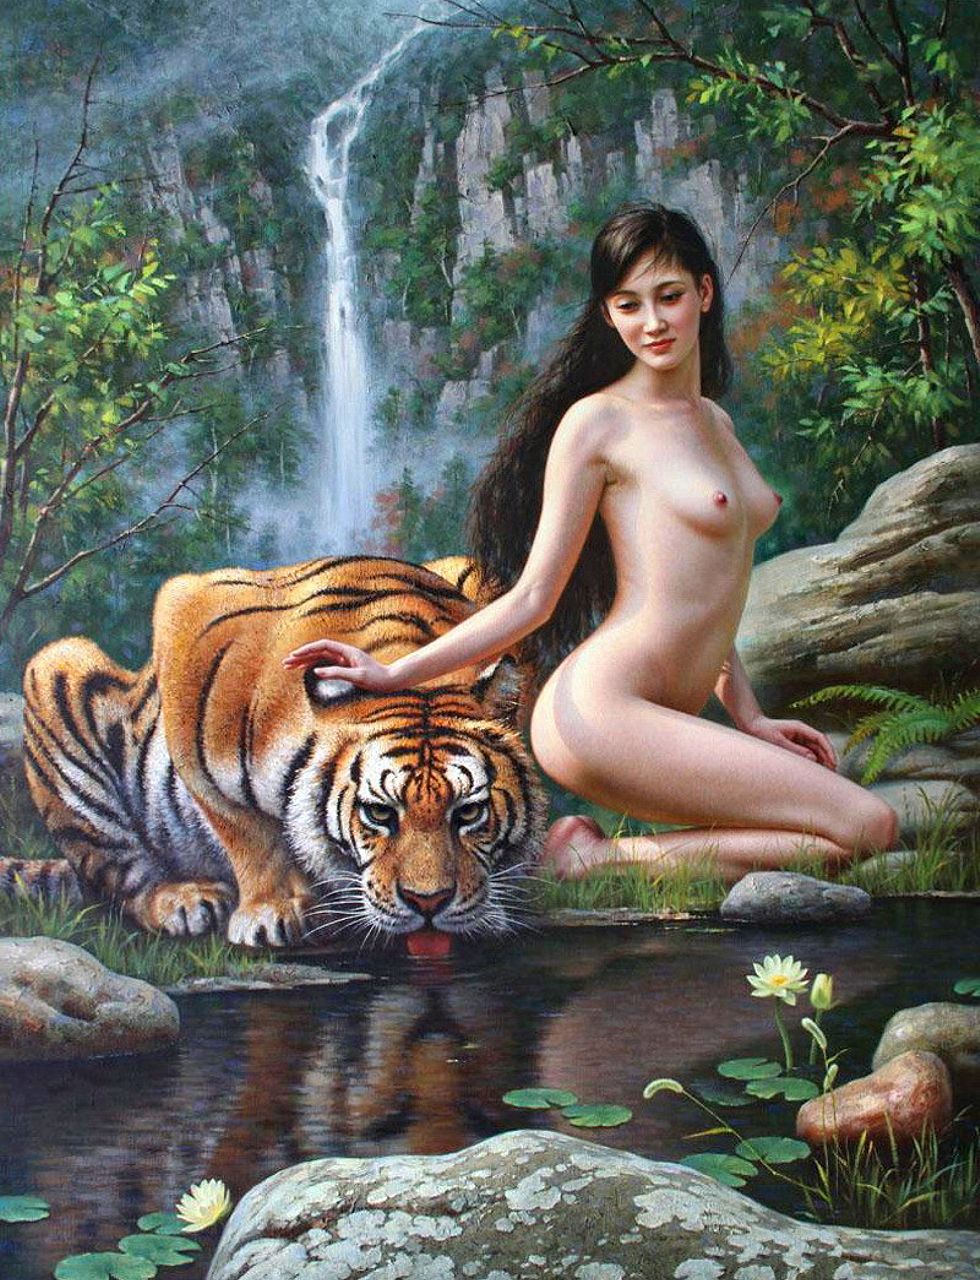 голая девушка сидит на коленях у водопада, гладя тигра по голове, живописная работа